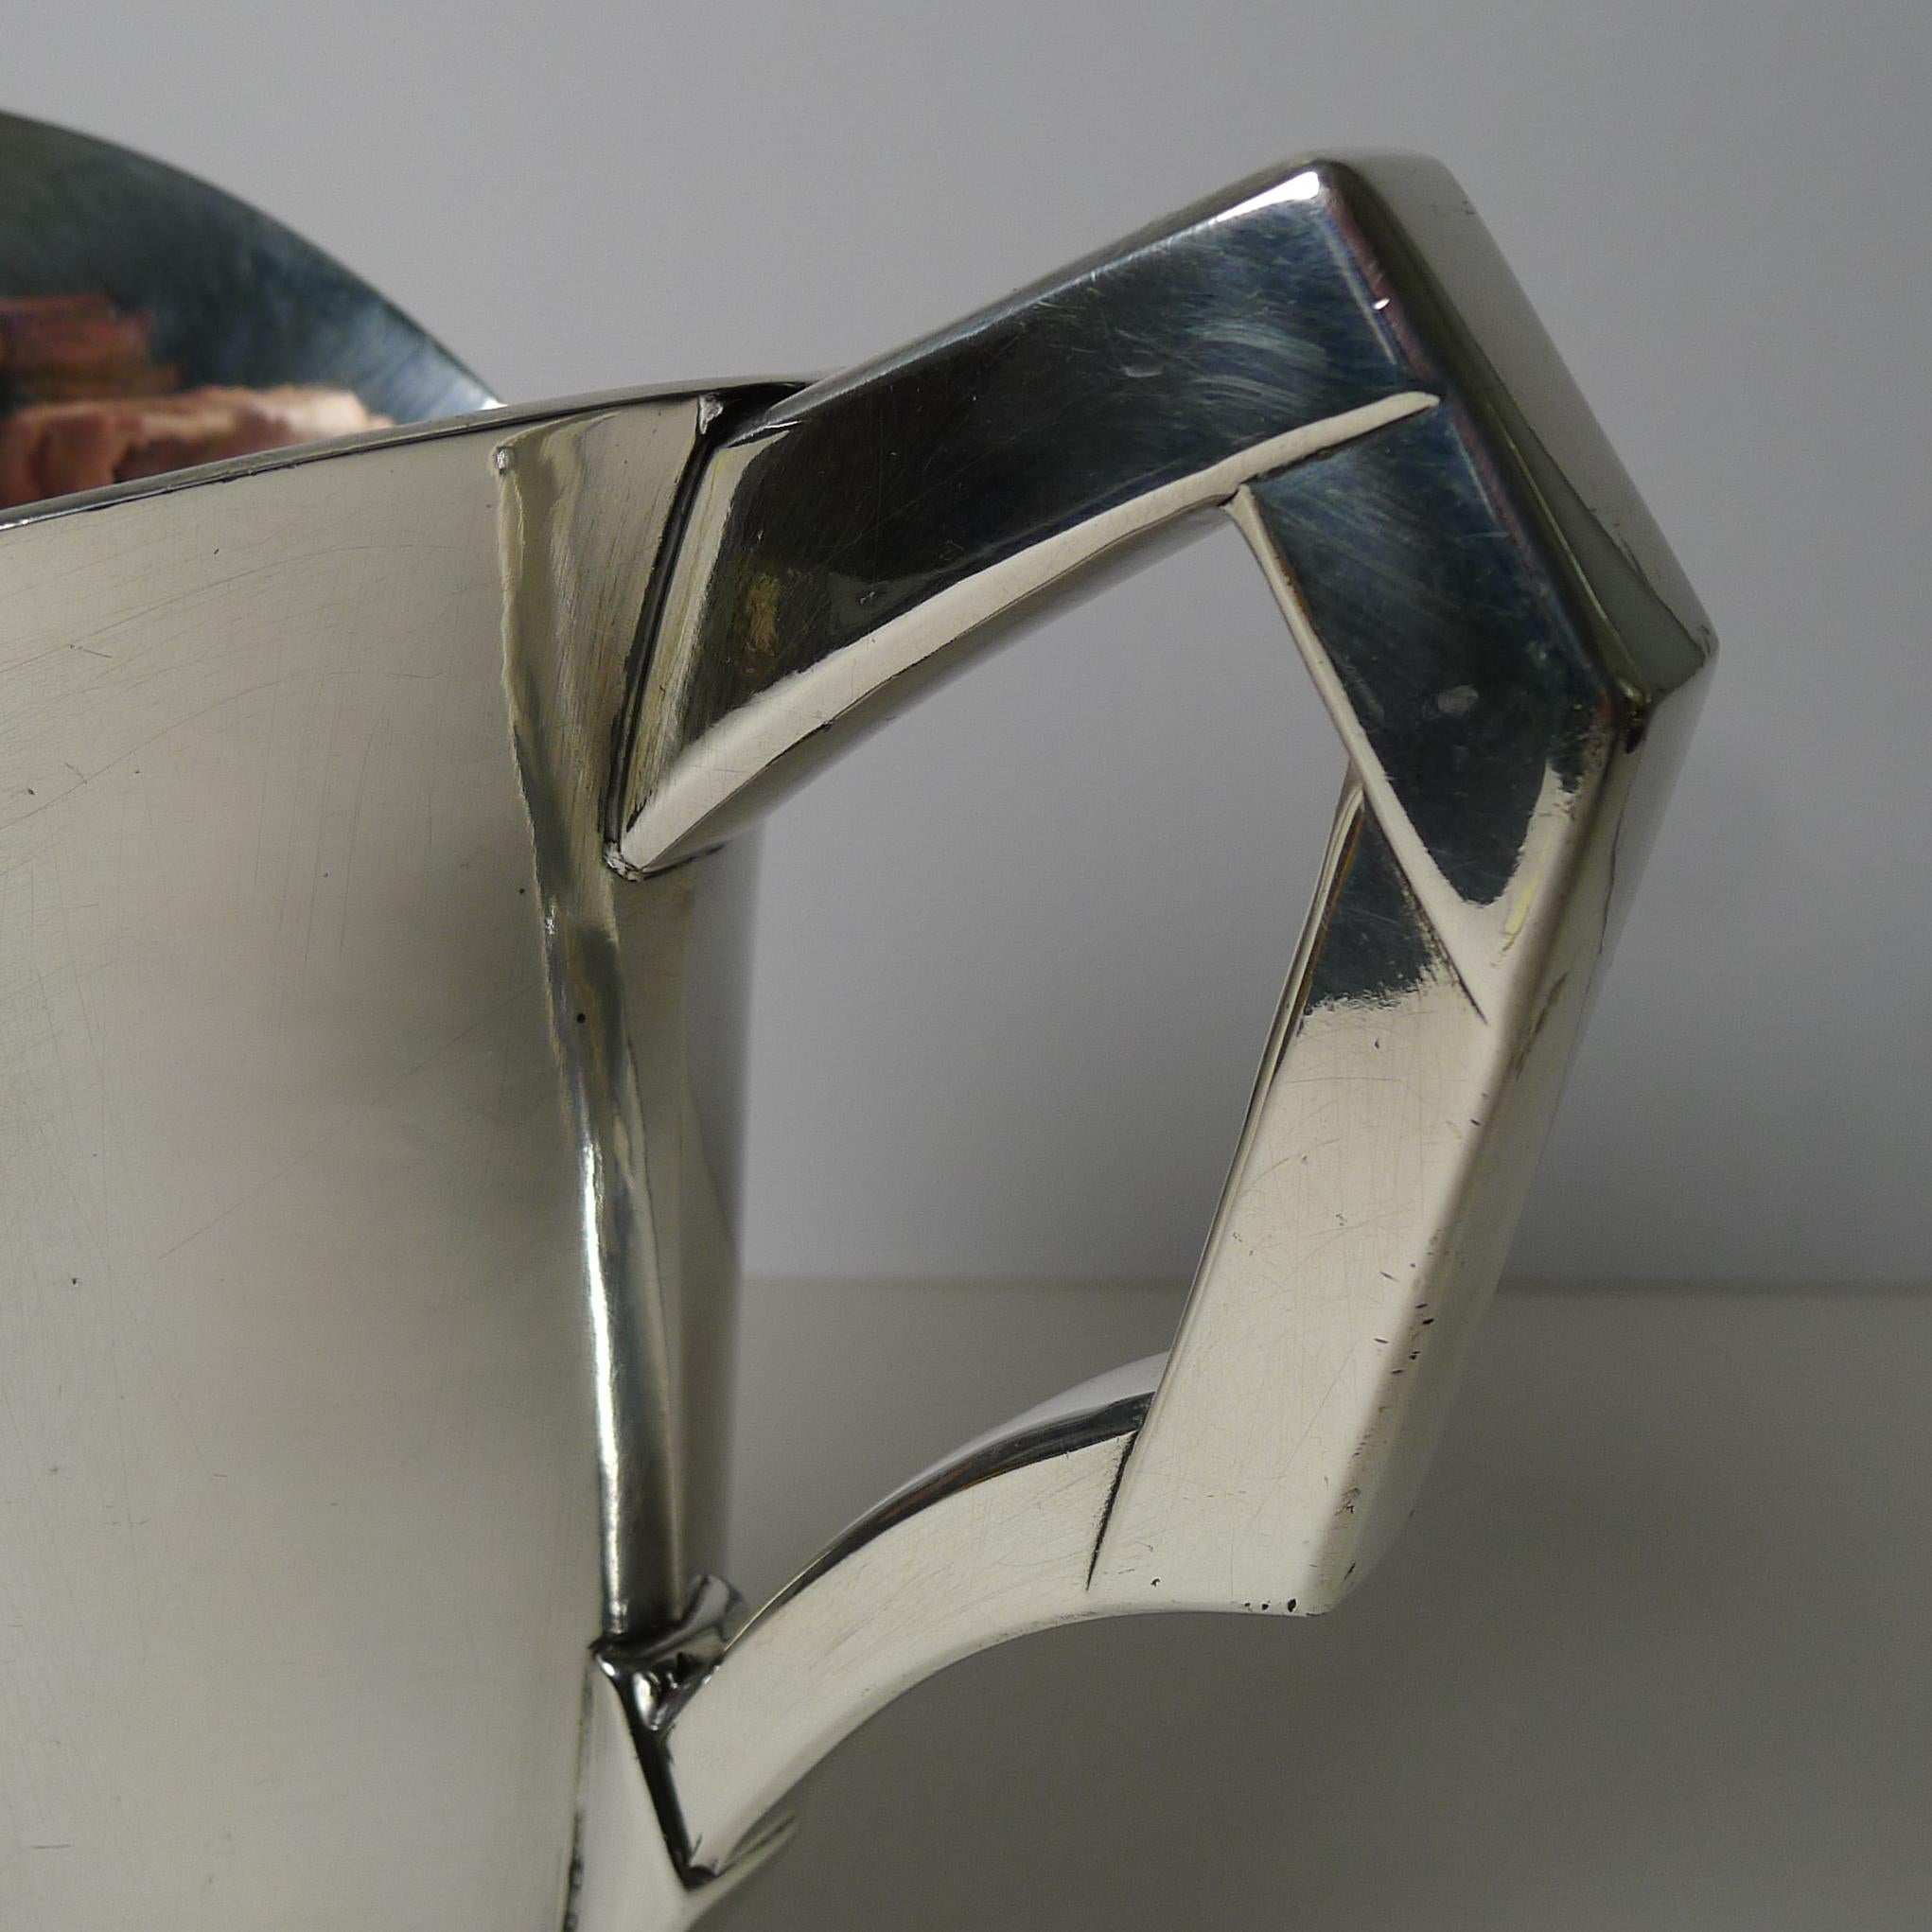 Une cruche en métal argenté très recherchée, conçue par les célèbres designers français (voir ci-dessous) Louis Süe et André Mare pour l'Orfèvrerie Gallia / Maison Christofle c.1925.

Revenant tout juste de notre atelier d'orfèvrerie, il a été